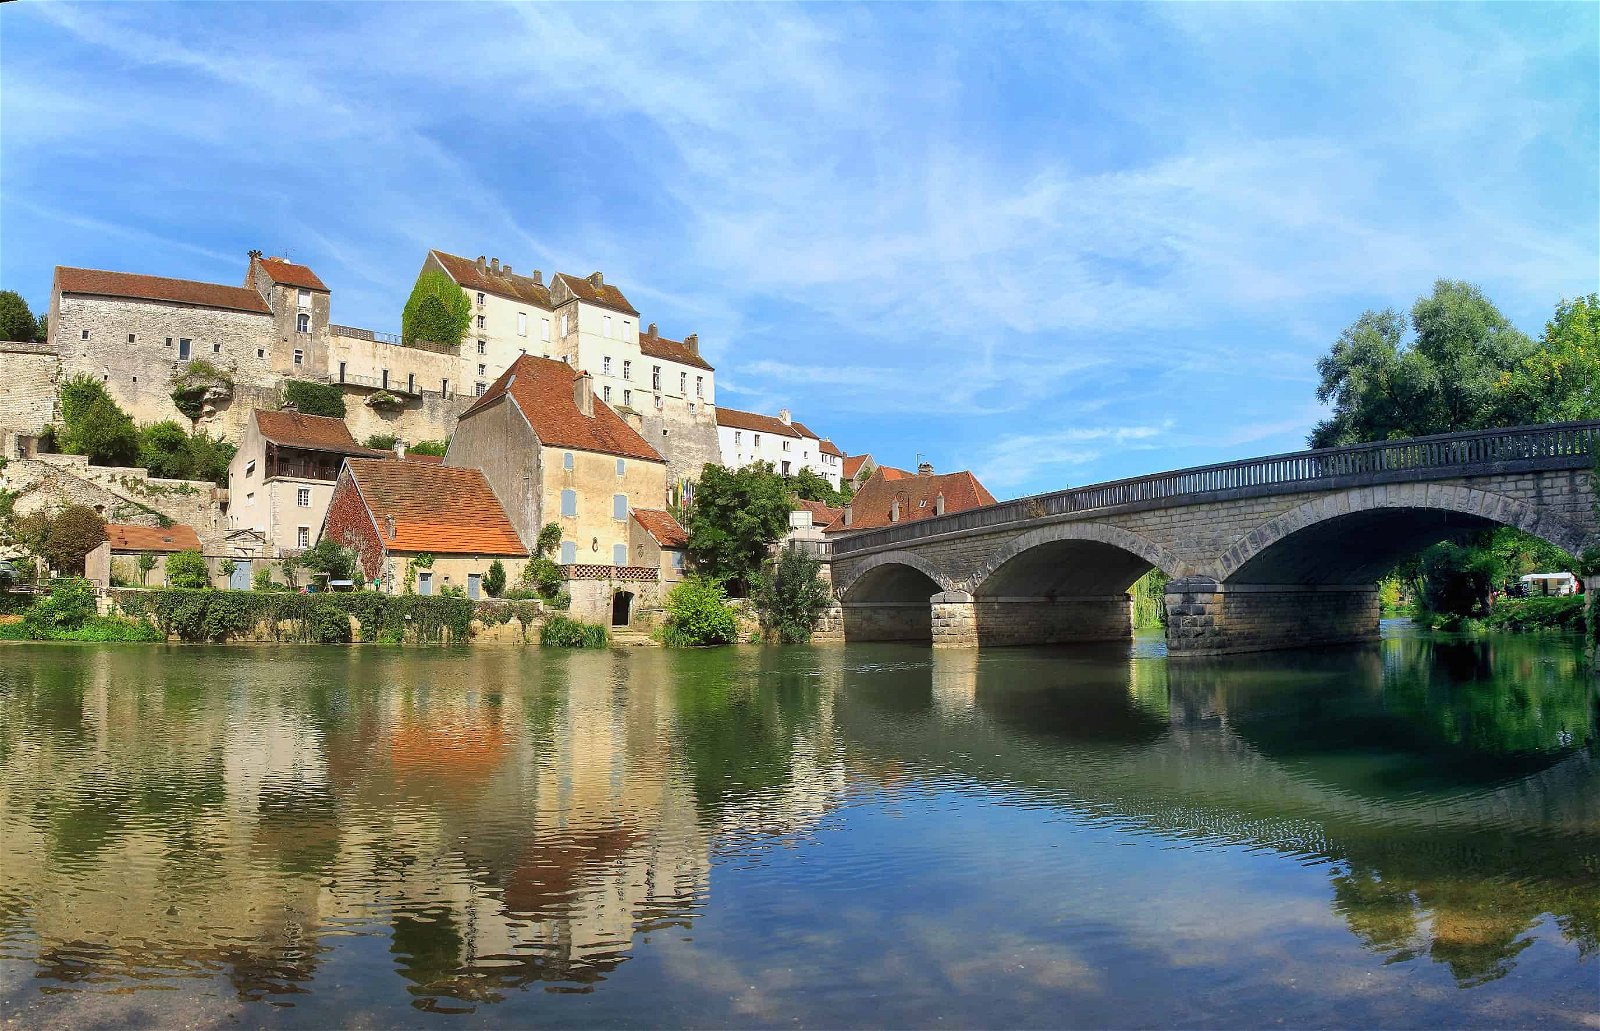 Een brug over het water leidt naar Pesmes, een van de mooiste Franse dorpjes.